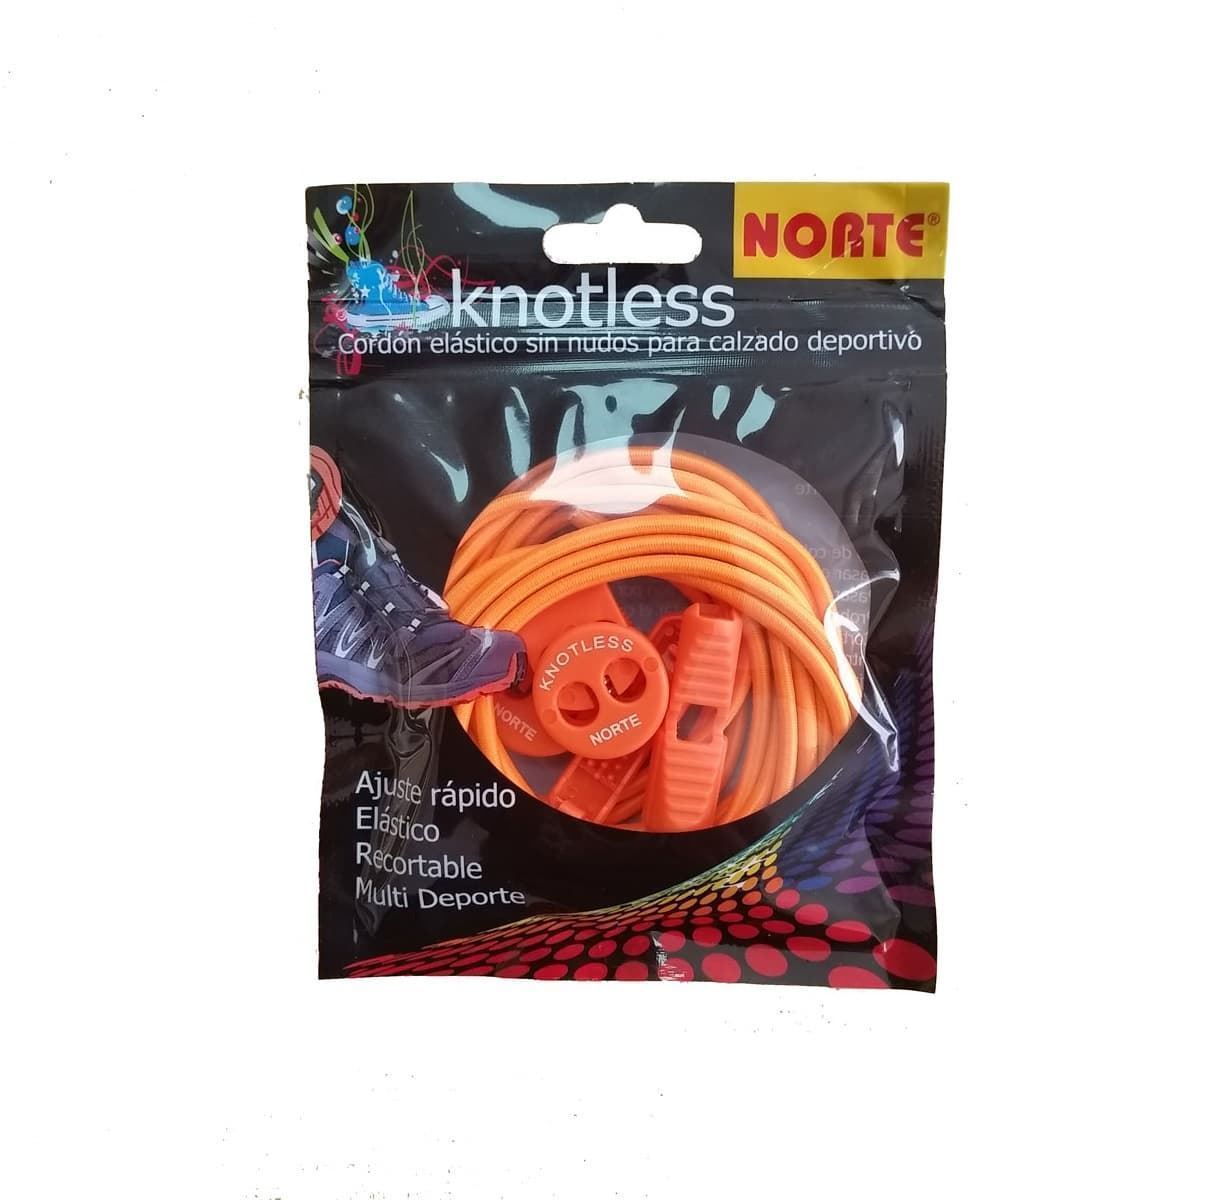 Cordón elástico para calzado deportivo Knotless - Imagen 1